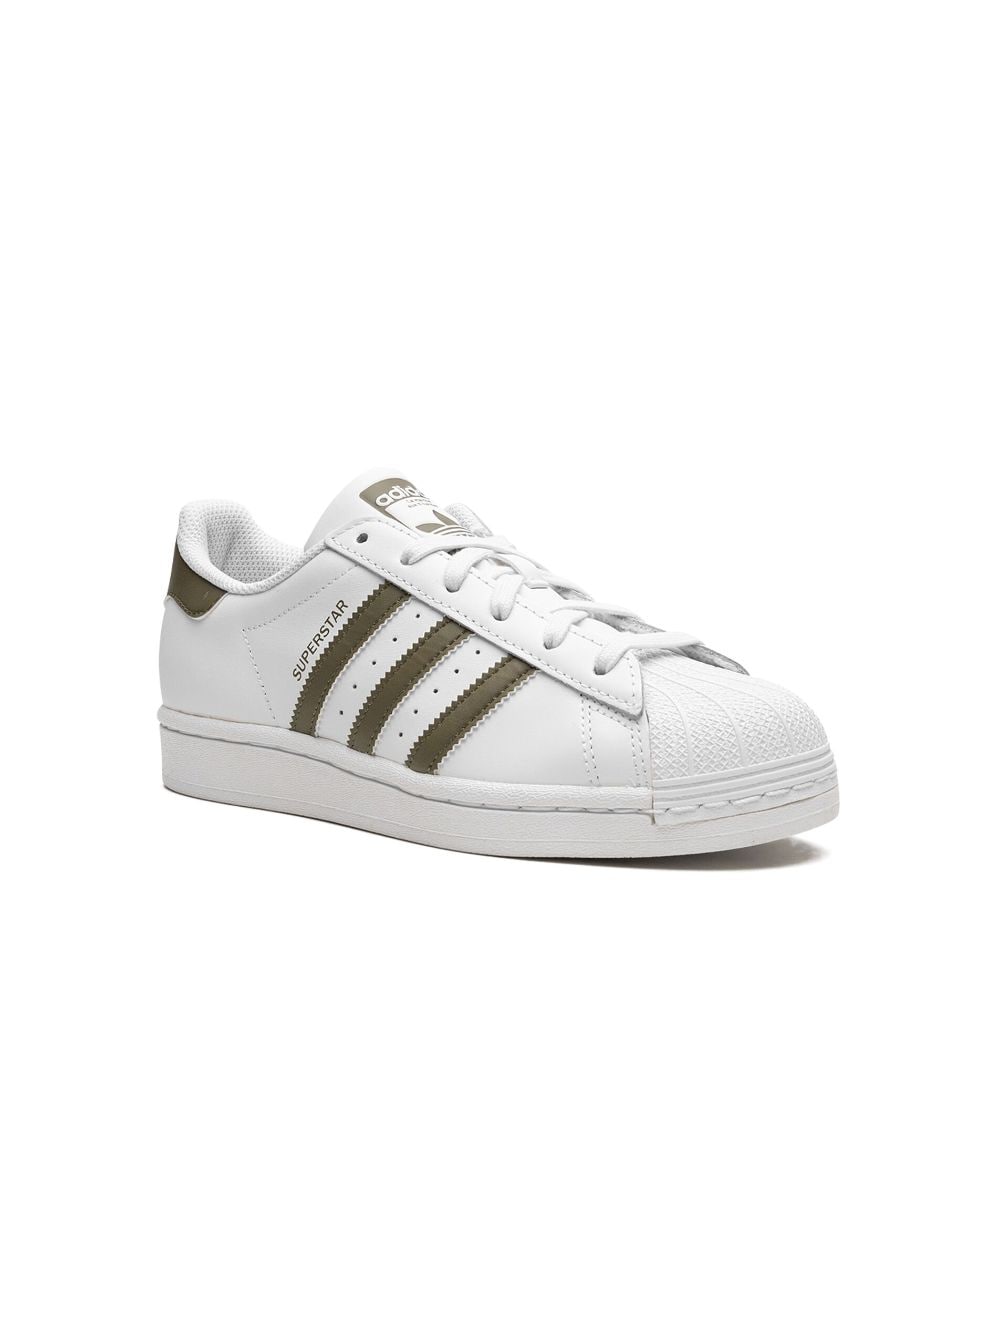 Adidas Originals Kids' Superstar 低帮运动鞋 In White/olive